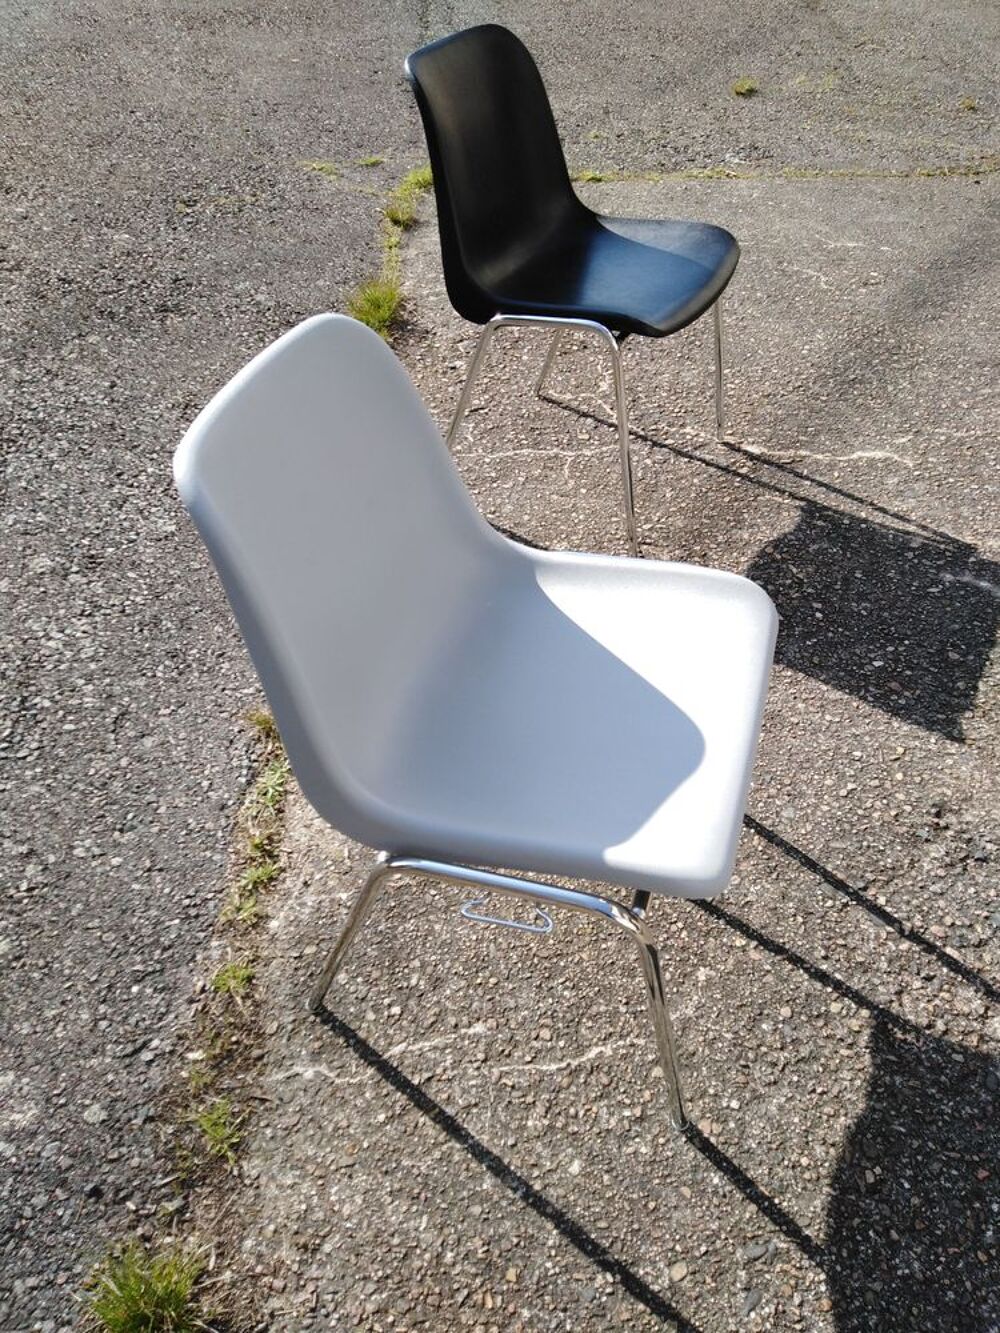   6 chaises coque grise en parfaite état couleur grise claire 